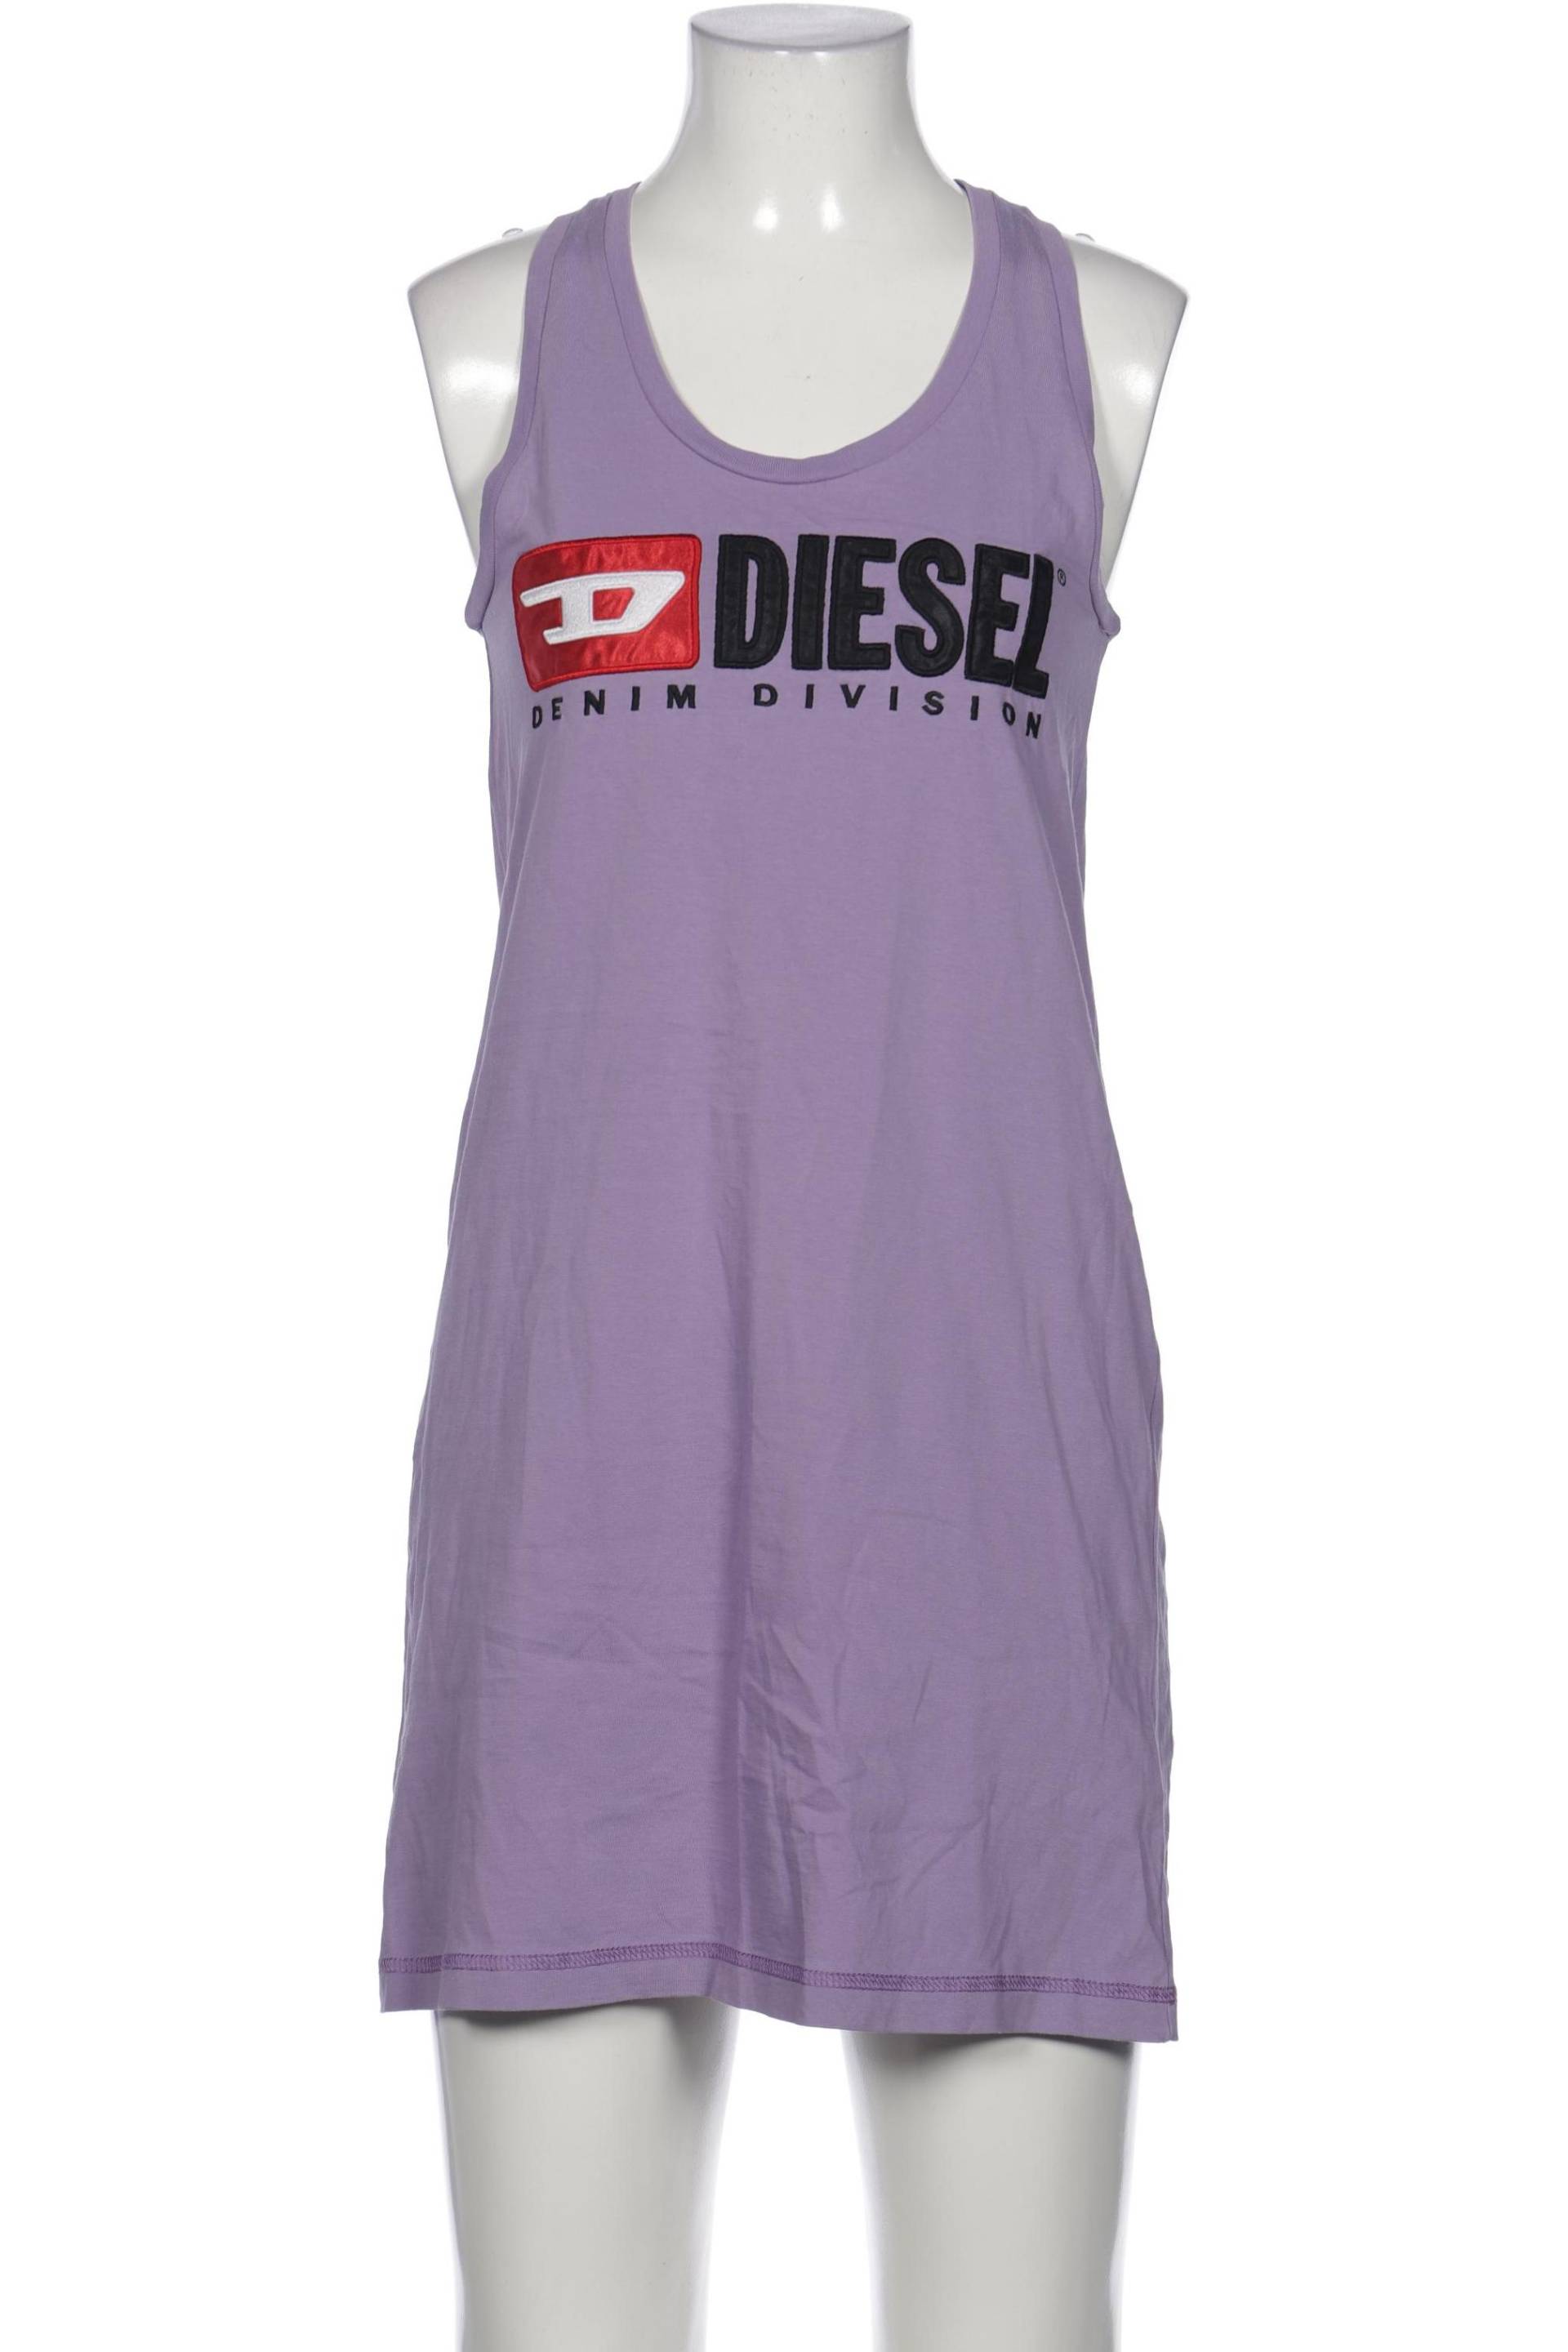 Diesel Damen Kleid, flieder von Diesel